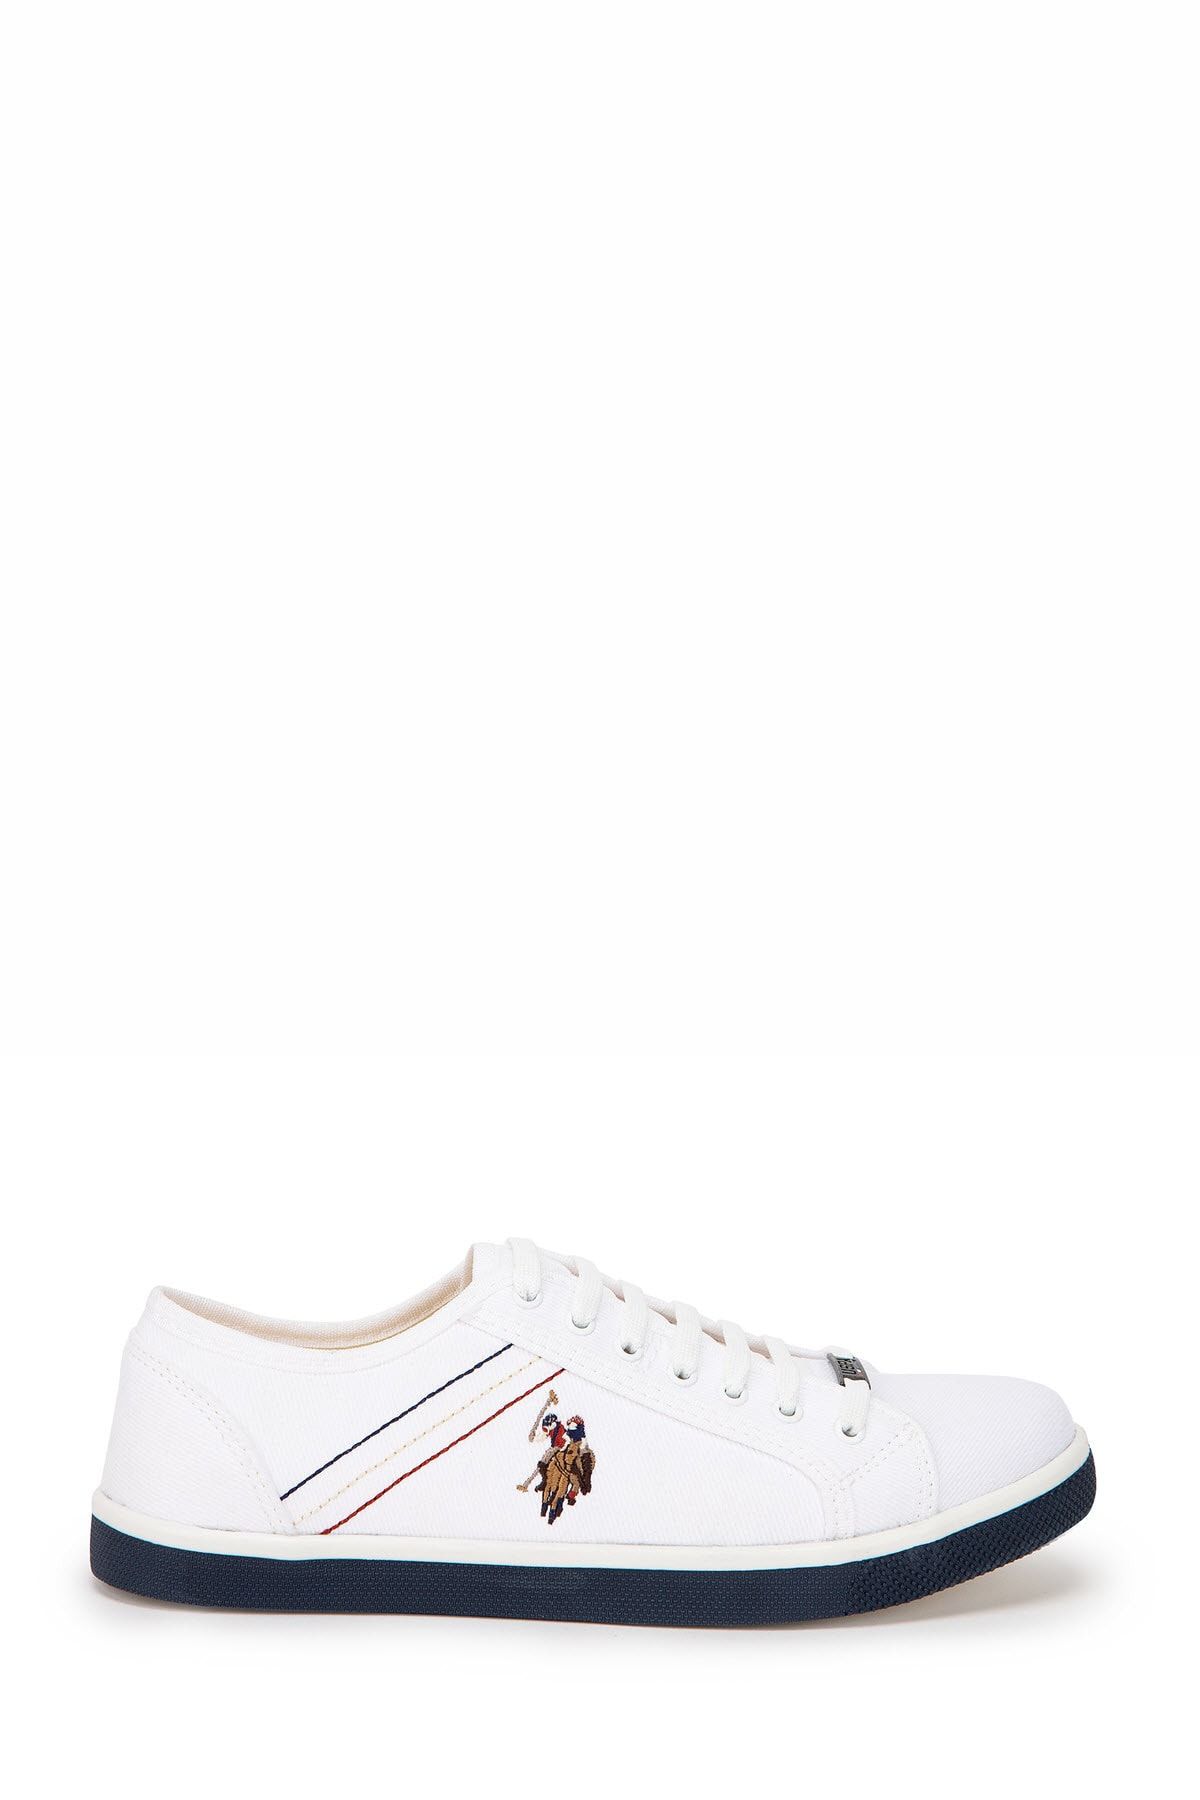 U.S. Polo Assn. Beyaz Erkek Ayakkabı